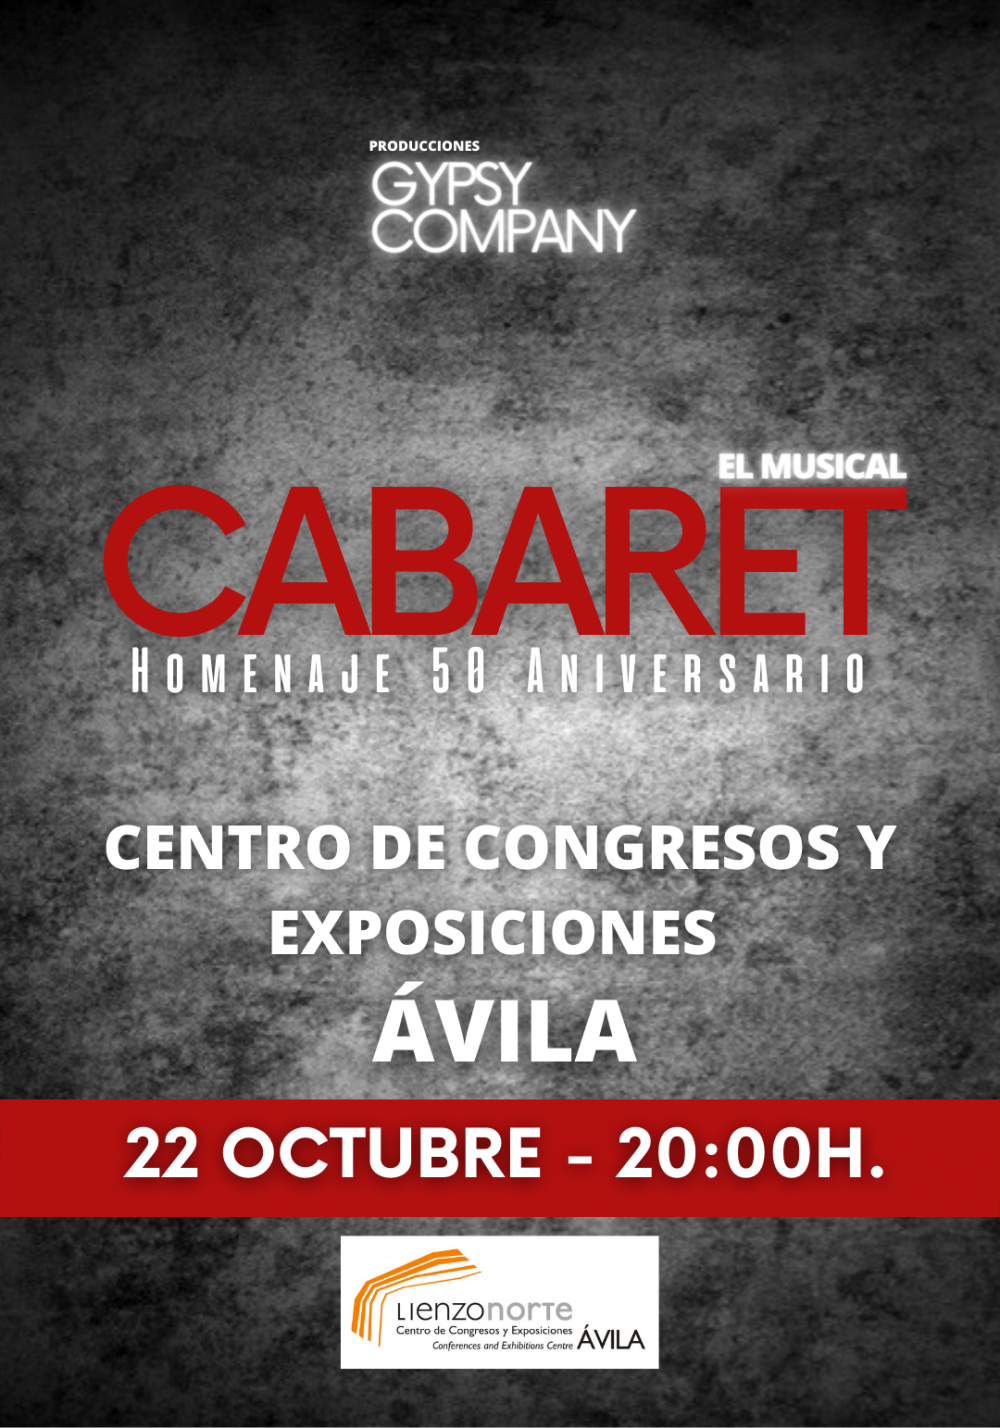 Cabaret, Homenaje 50 Aniversario. El Musical